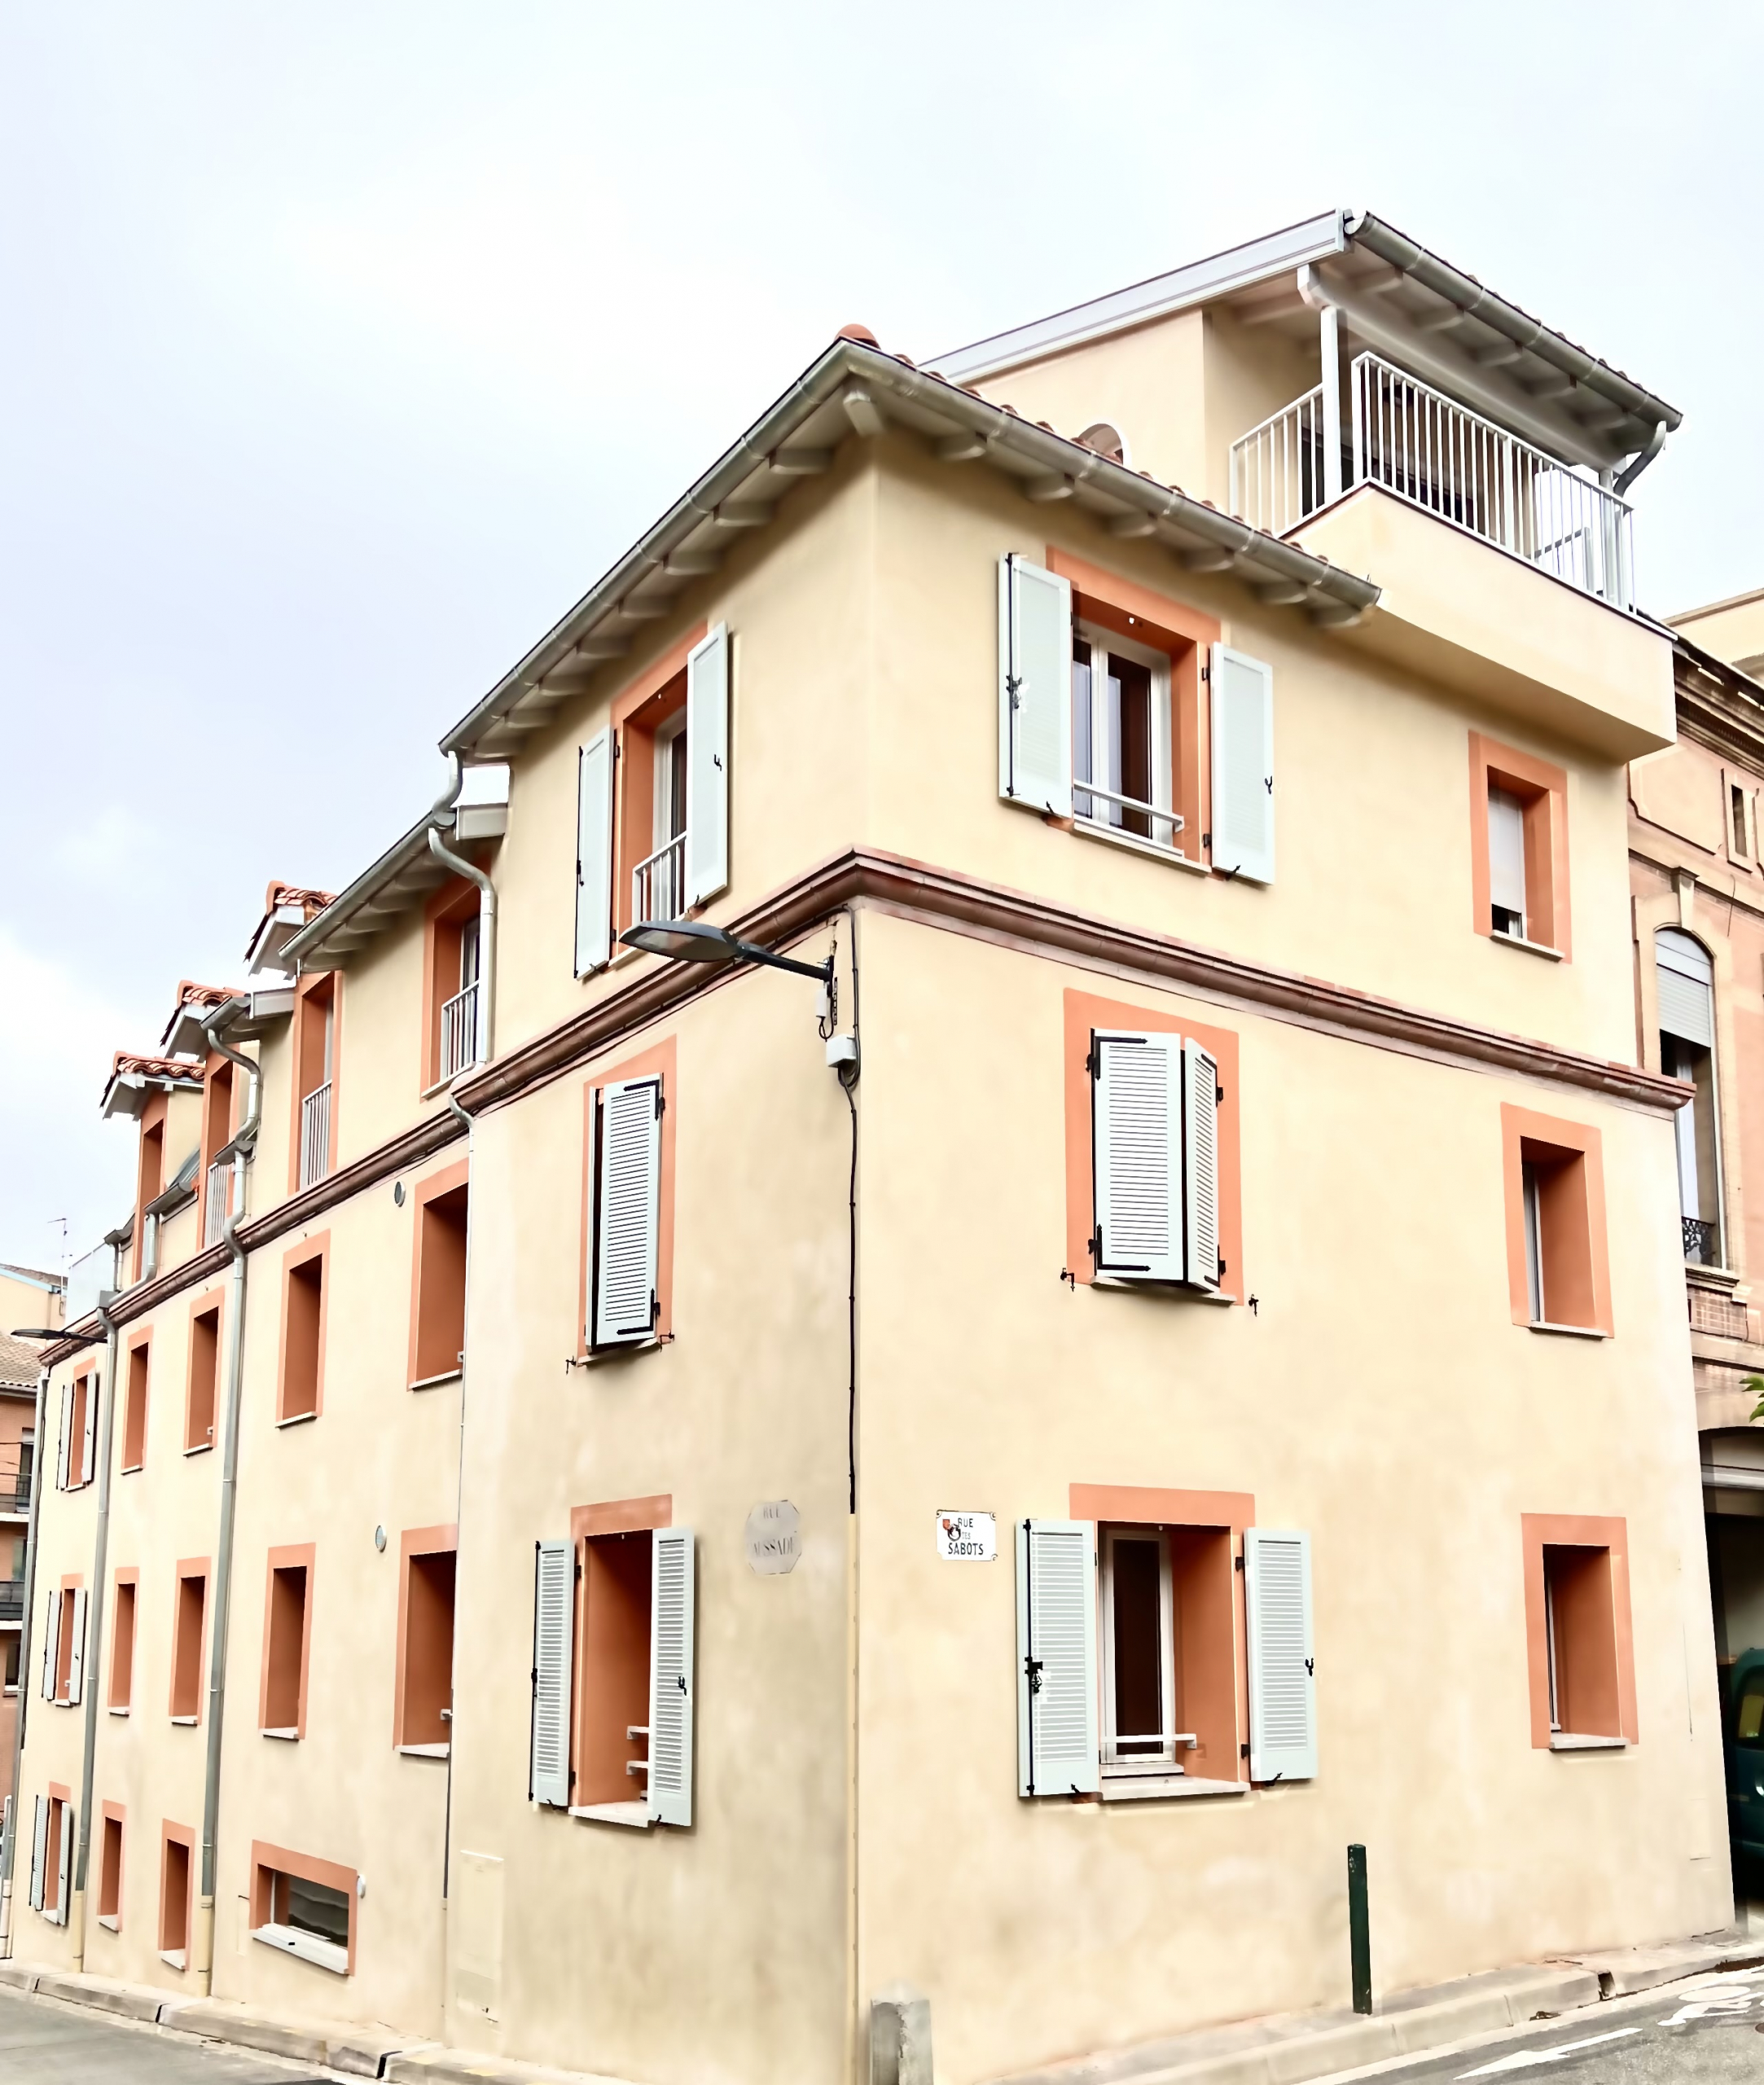 Rénovation complète d'un immeuble existant pour la création de 8 logements et d'un espace professionnel. Rue Caussade - Toulouse.